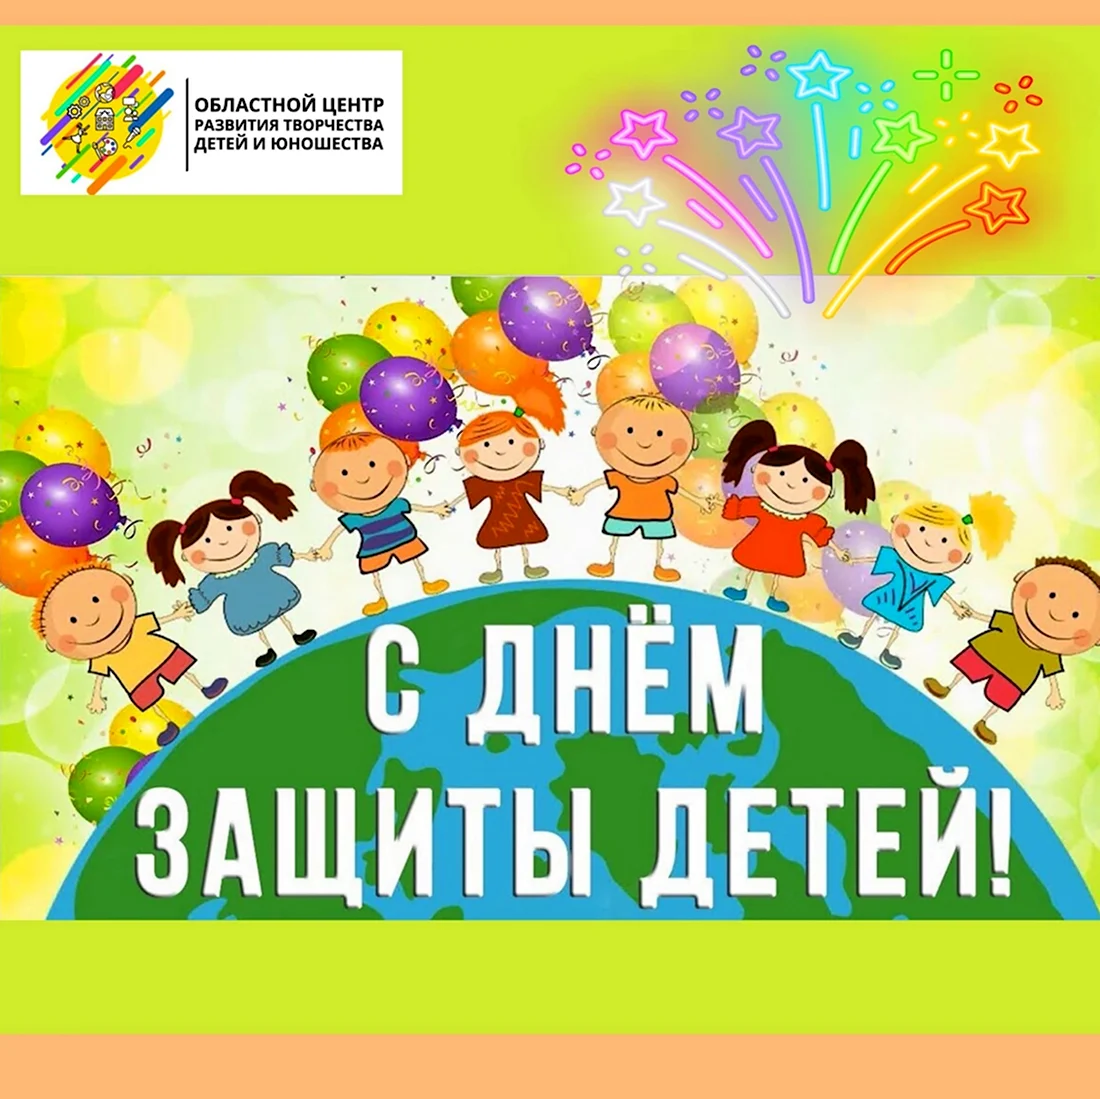 С праздником 1 июня день защиты детей. Открытка на праздник